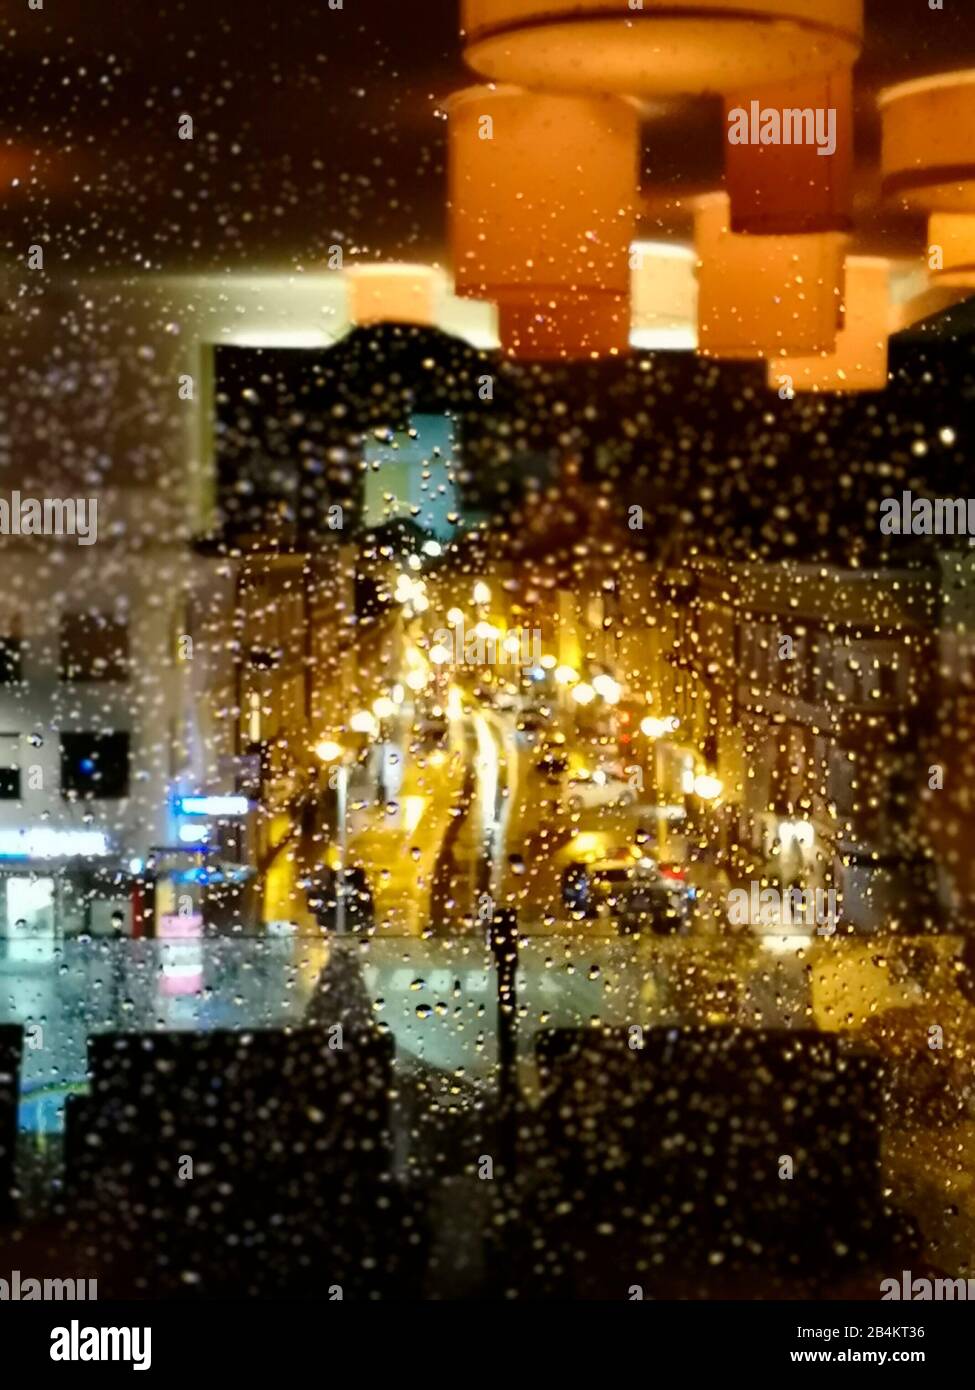 Luci di strada dietro le finestre piovose e riflesso dell'illuminazione interna Foto Stock